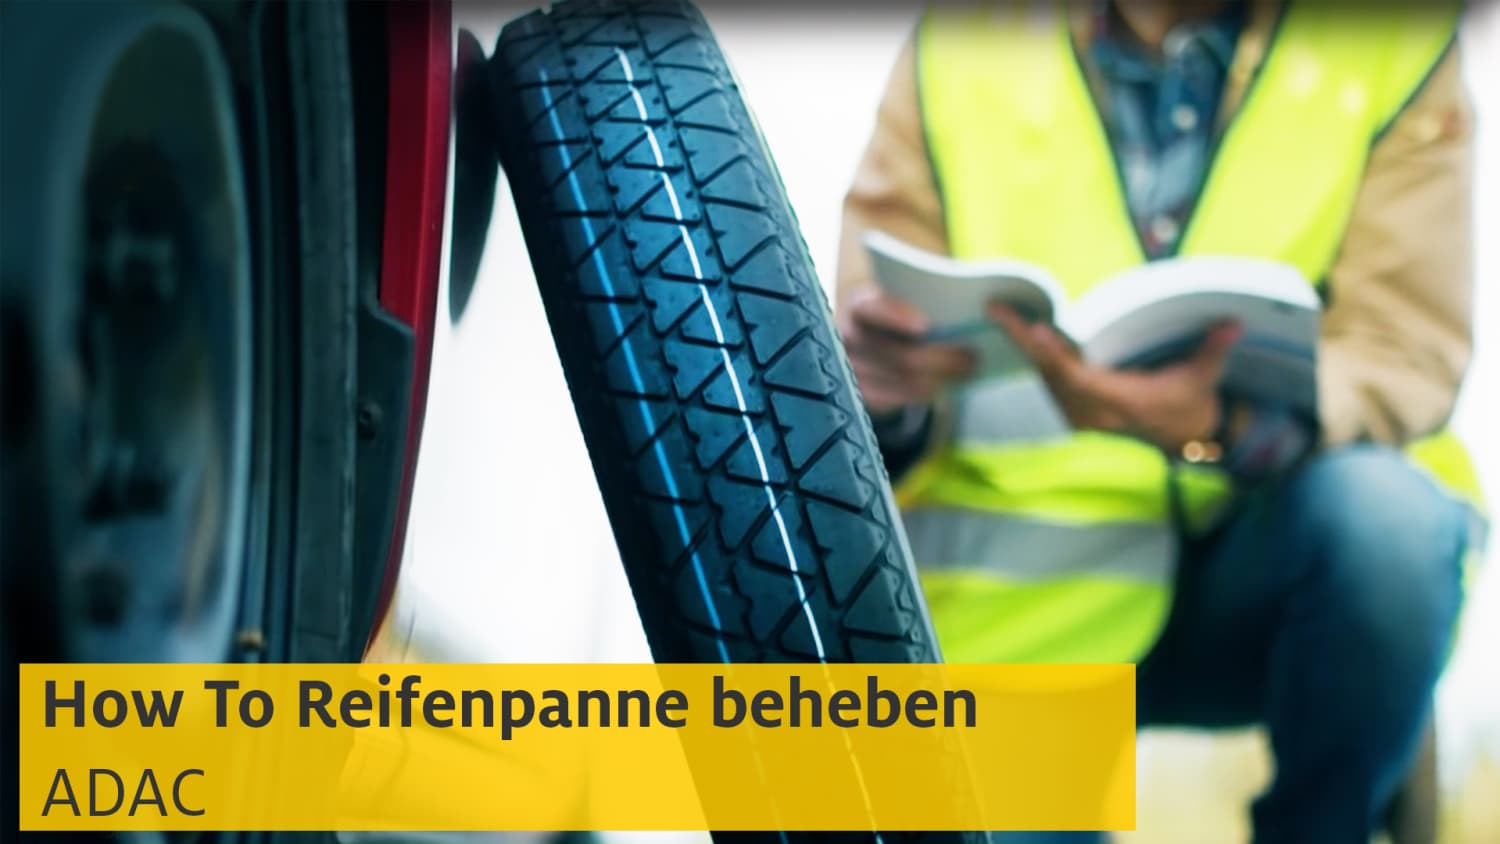 Reifenpanne: Das können Sie bei einem platten Reifen tun